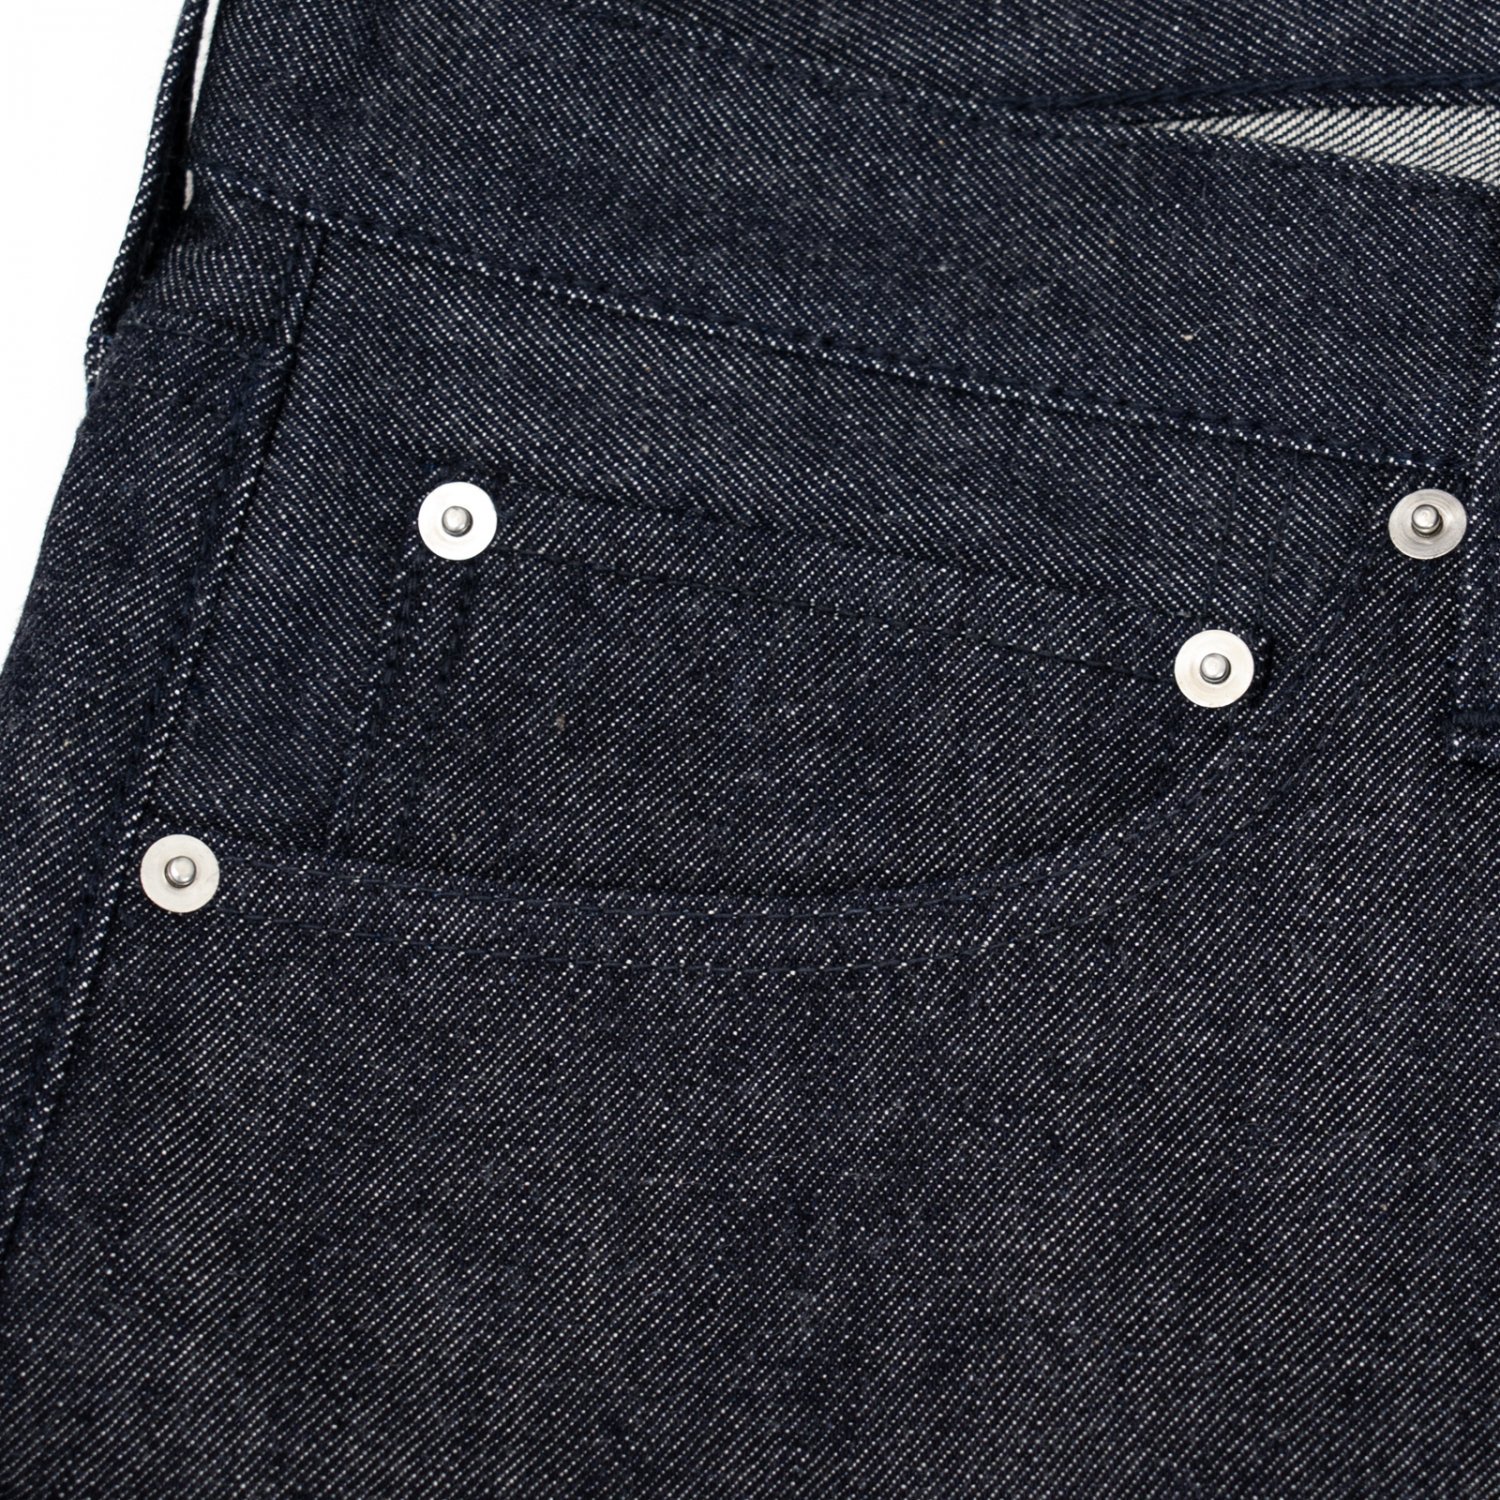 NORITAKE/HARADA * Denim Pants 38inch Short